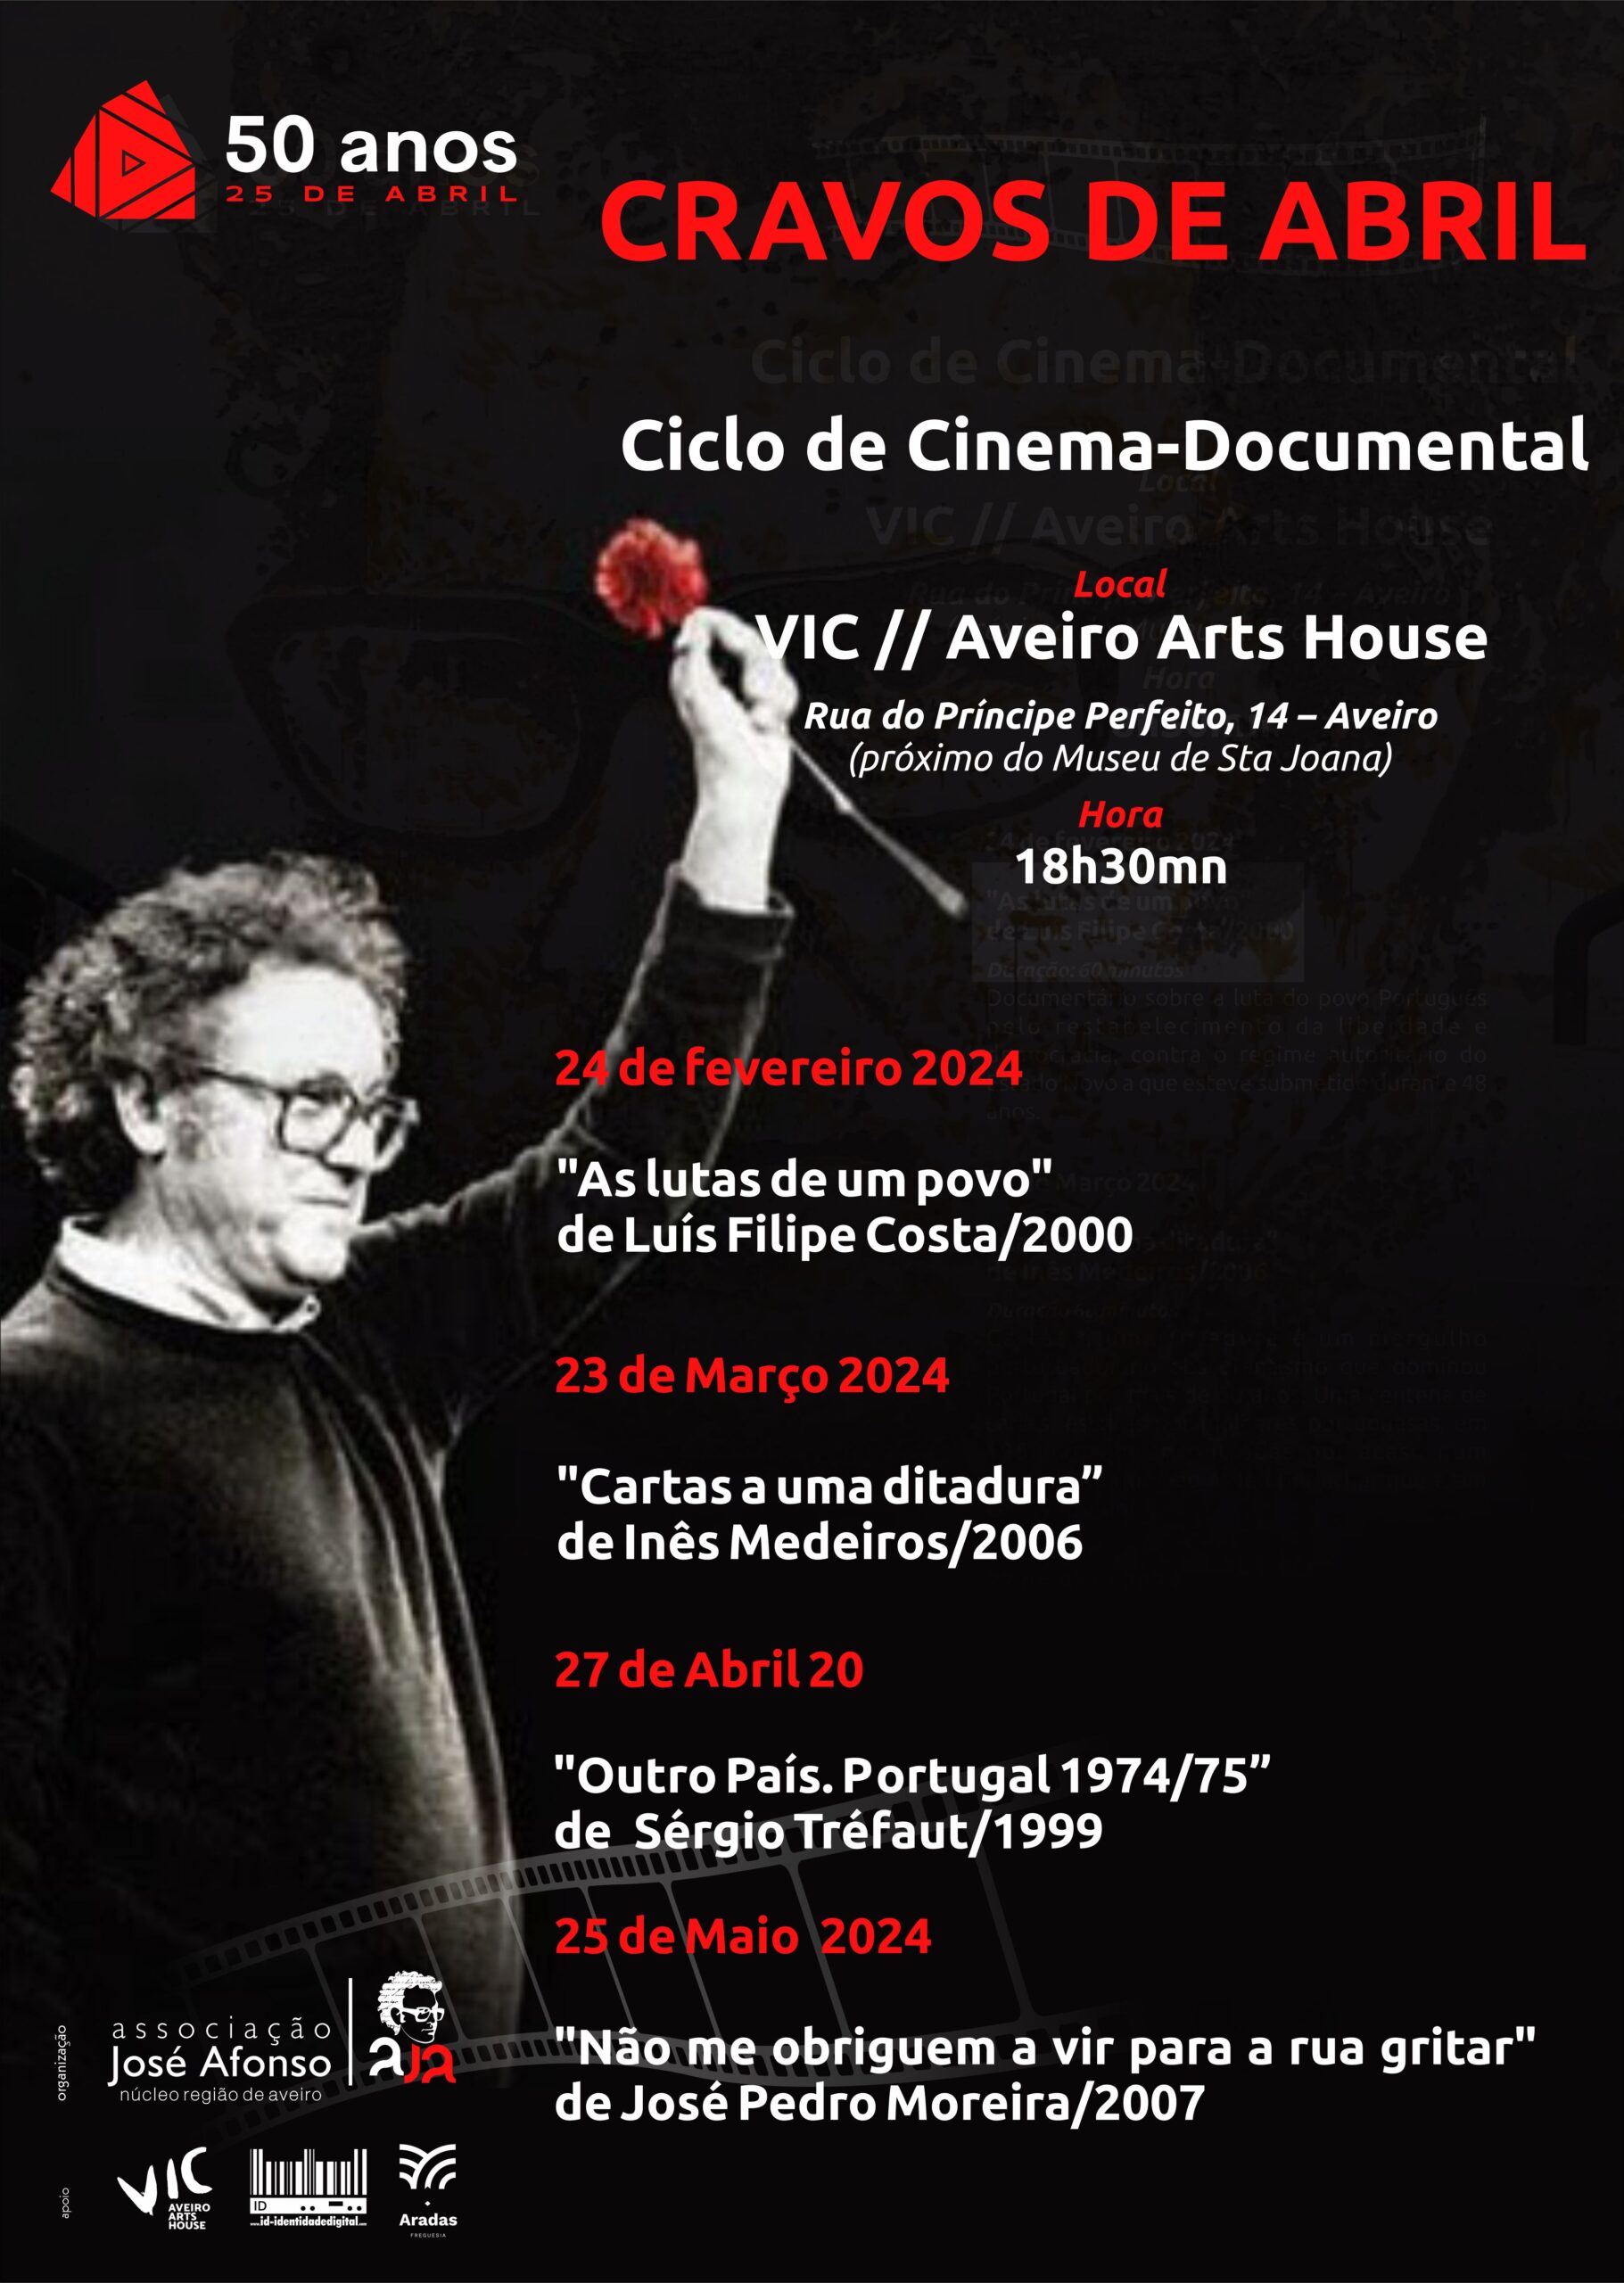 Capa Oficial do Evento Cravos de Abril - Ciclo de cinema documental